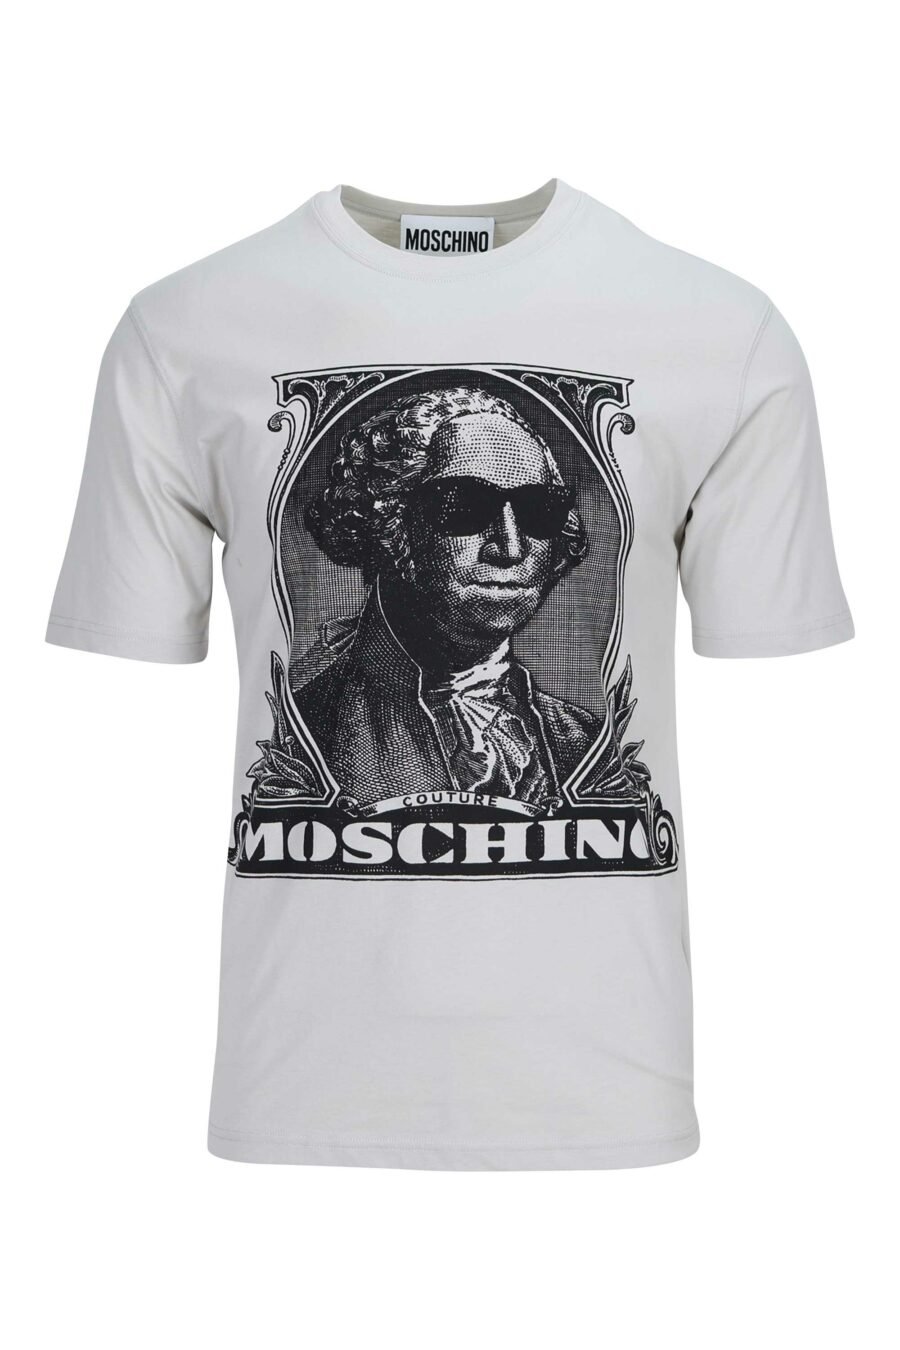 T-shirt cinzenta com maxilogo "Moschino" - 889316954807